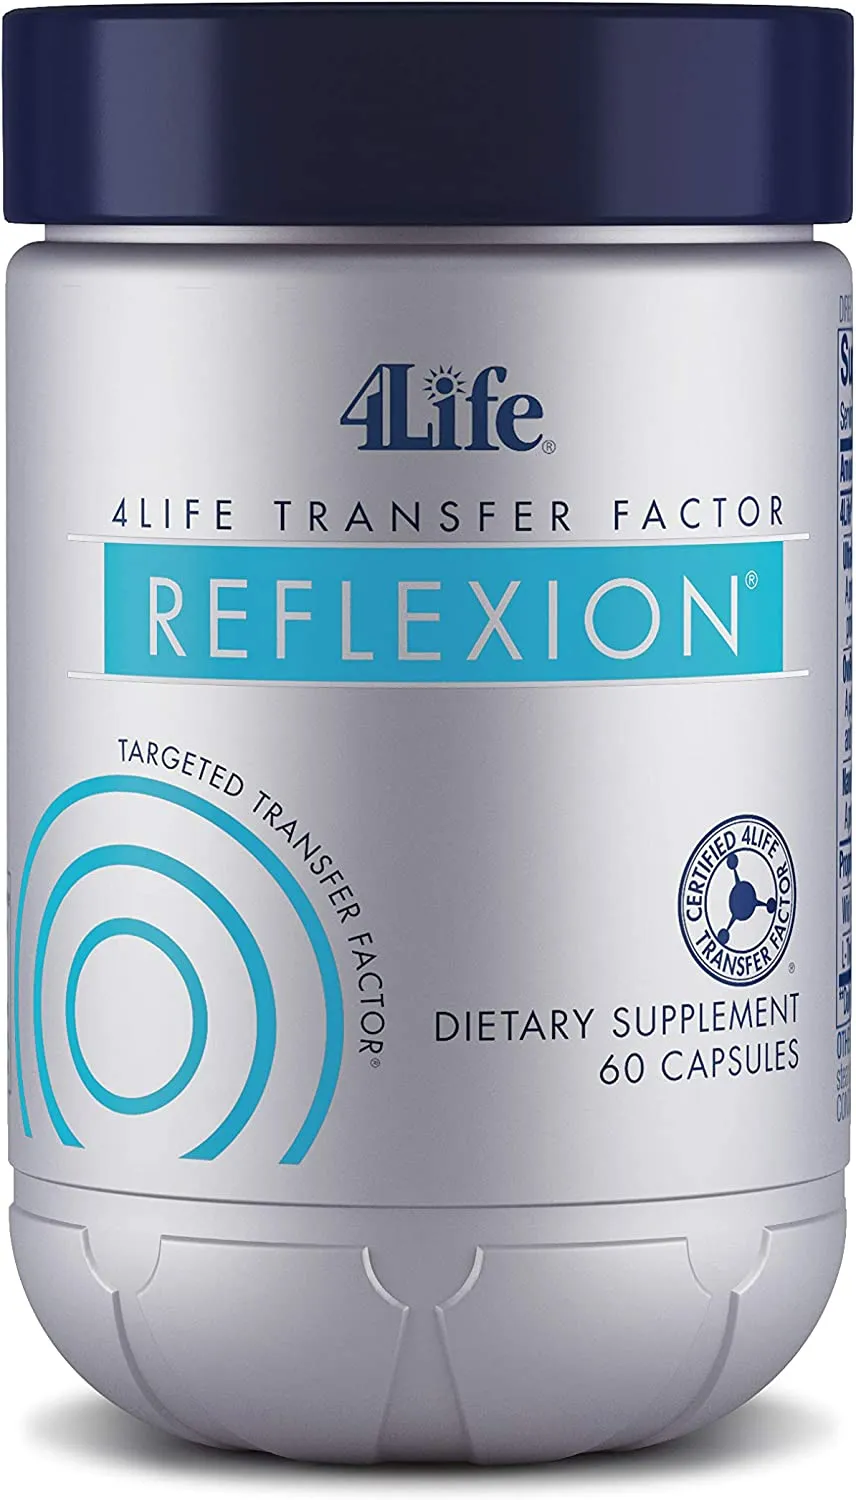 4Life Transfer Factor Reflexion